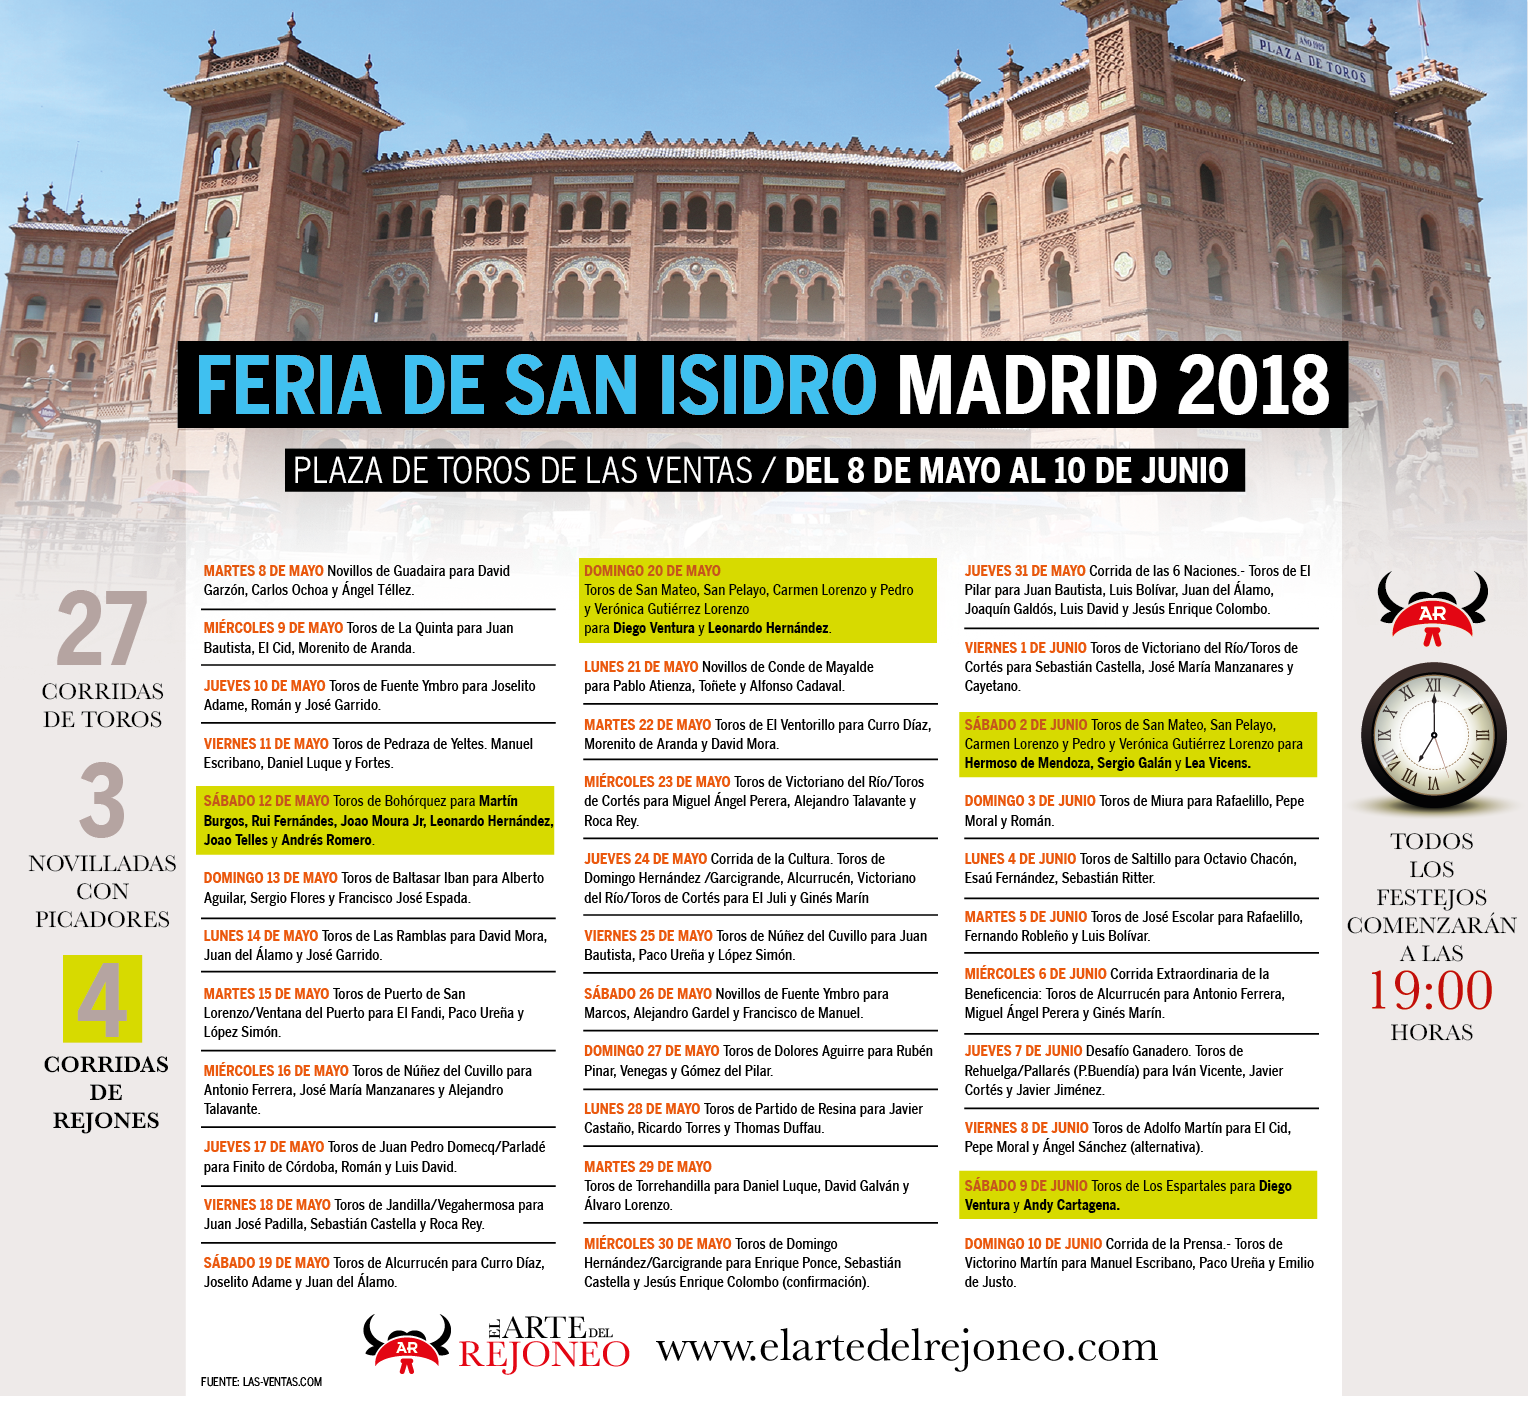 Calma campo Día Cuatro corridas de rejones en la Feria de San Isidro 2018 – Web dedicada al  apasionante mundo del toreo a caballo